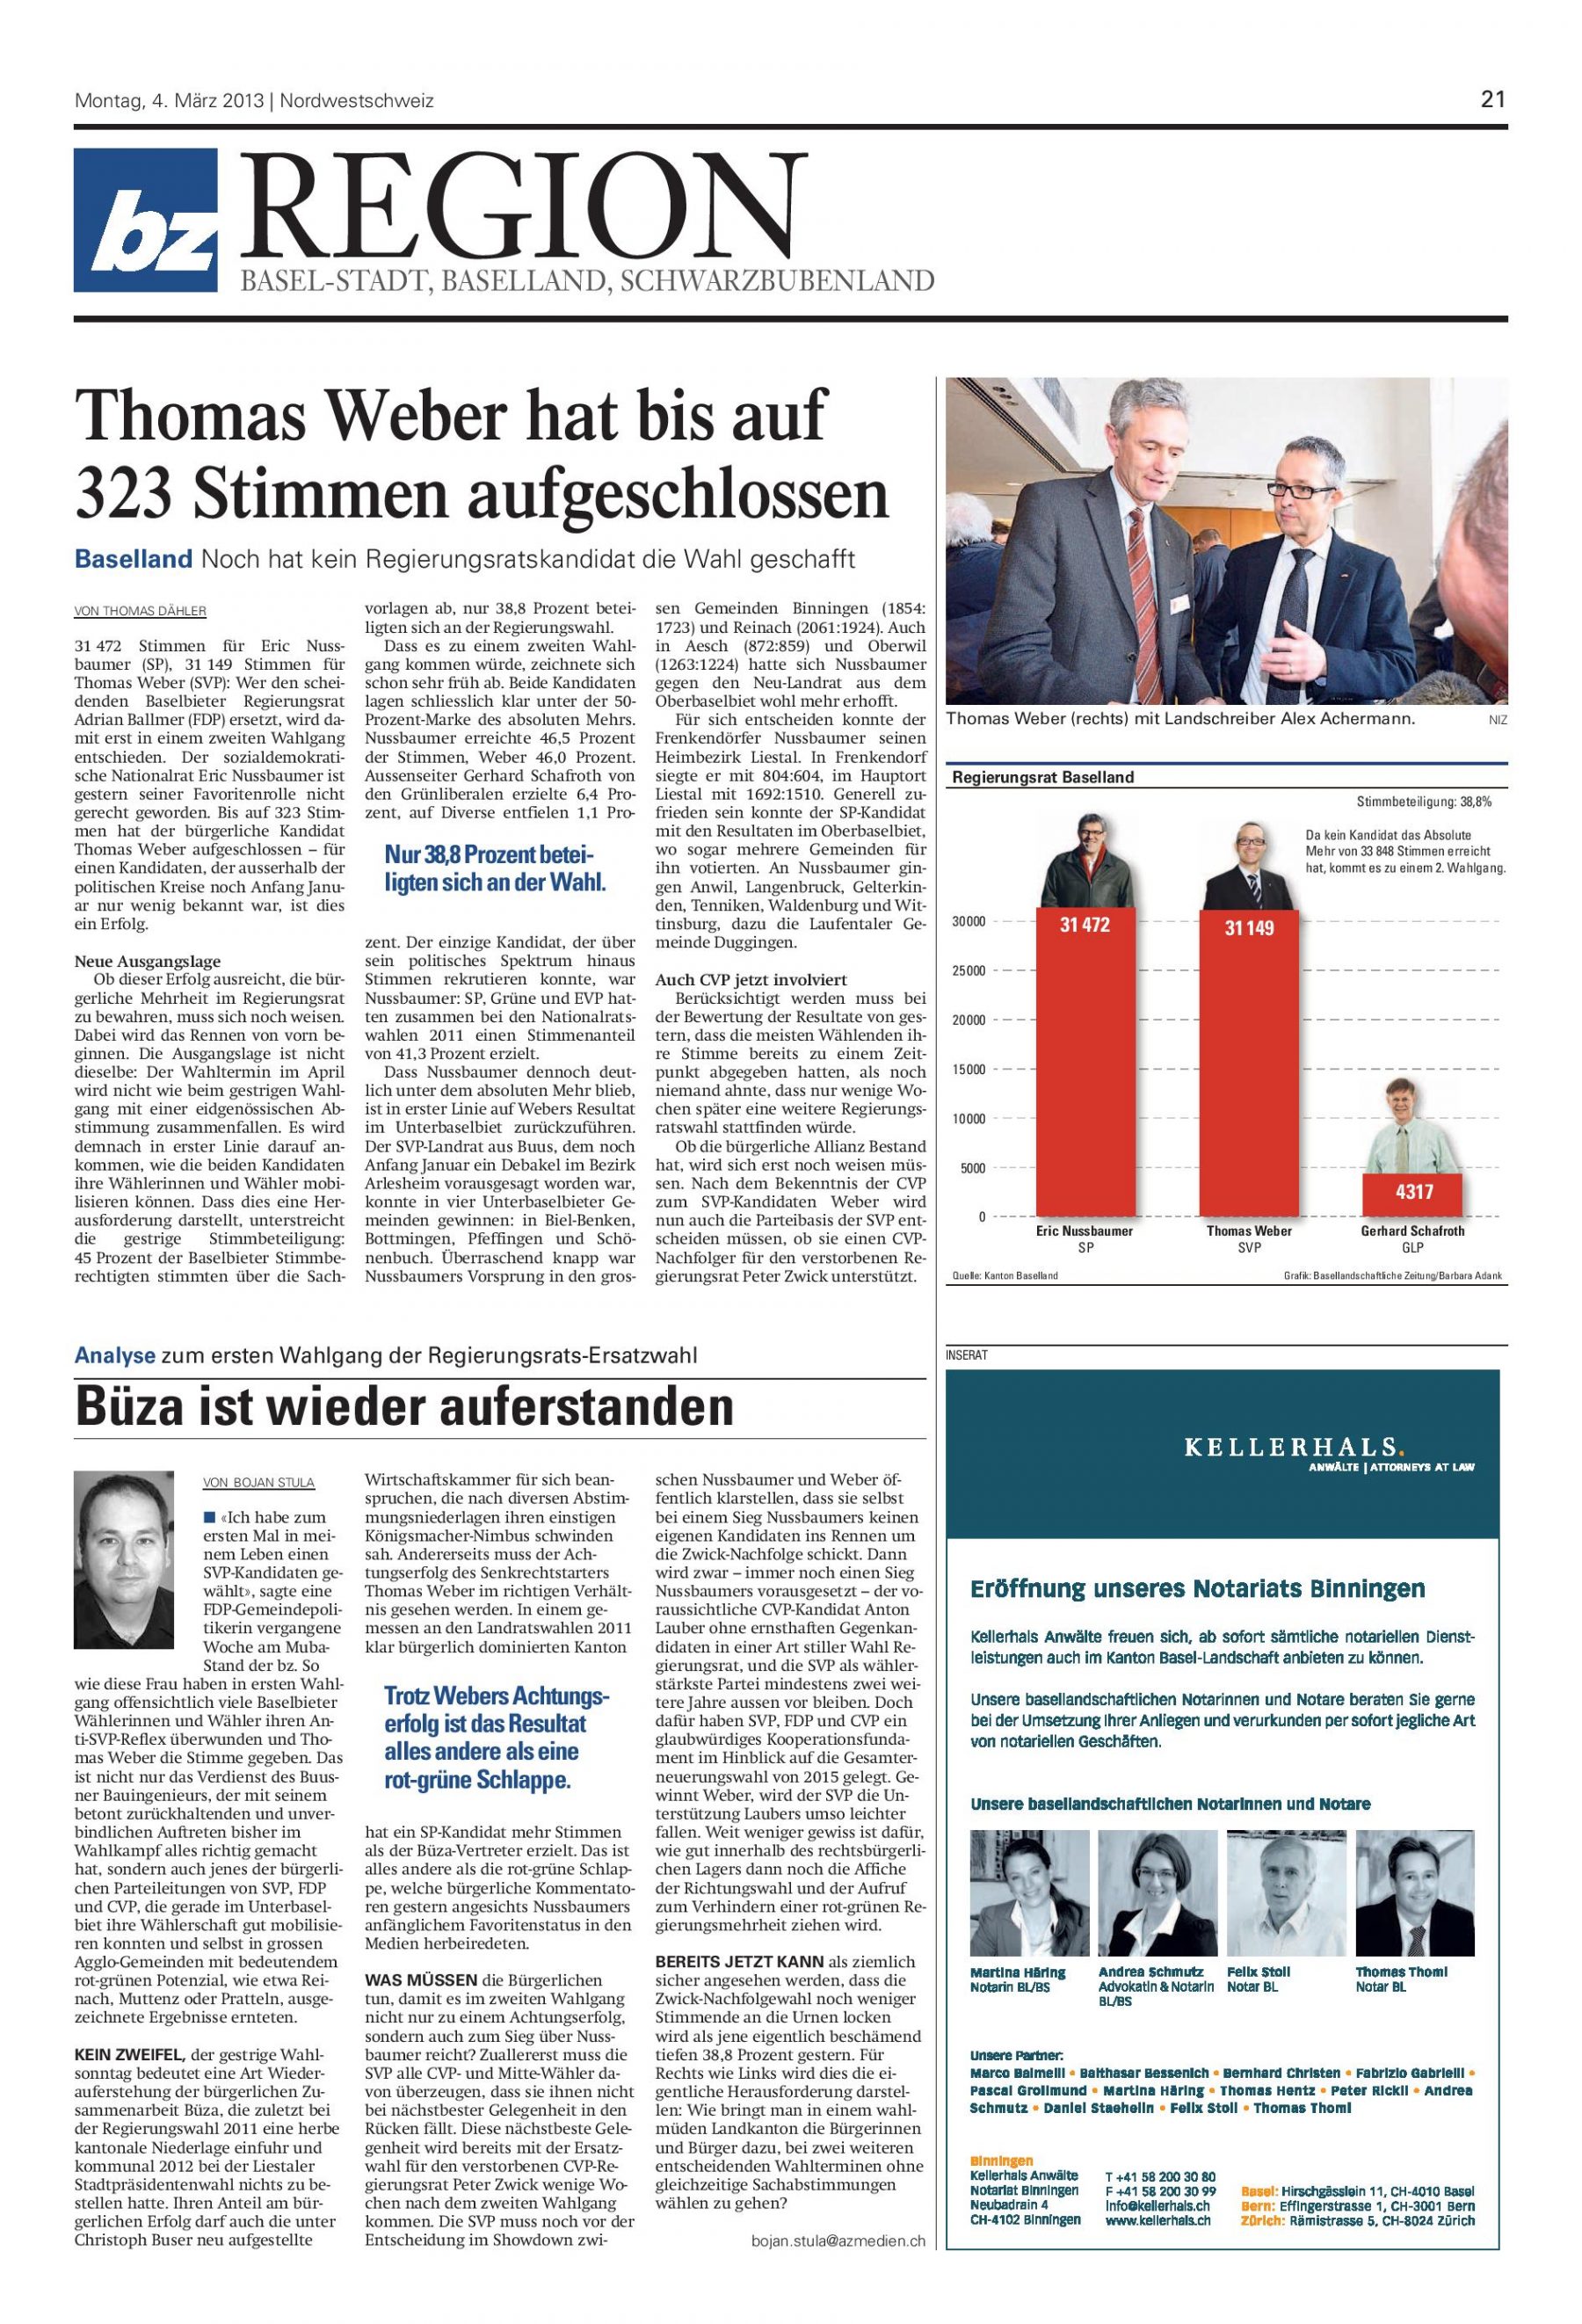 Thomas Weber, BZ: Thomas Weber hat bis auf 323 Stimmen aufgeschlossen